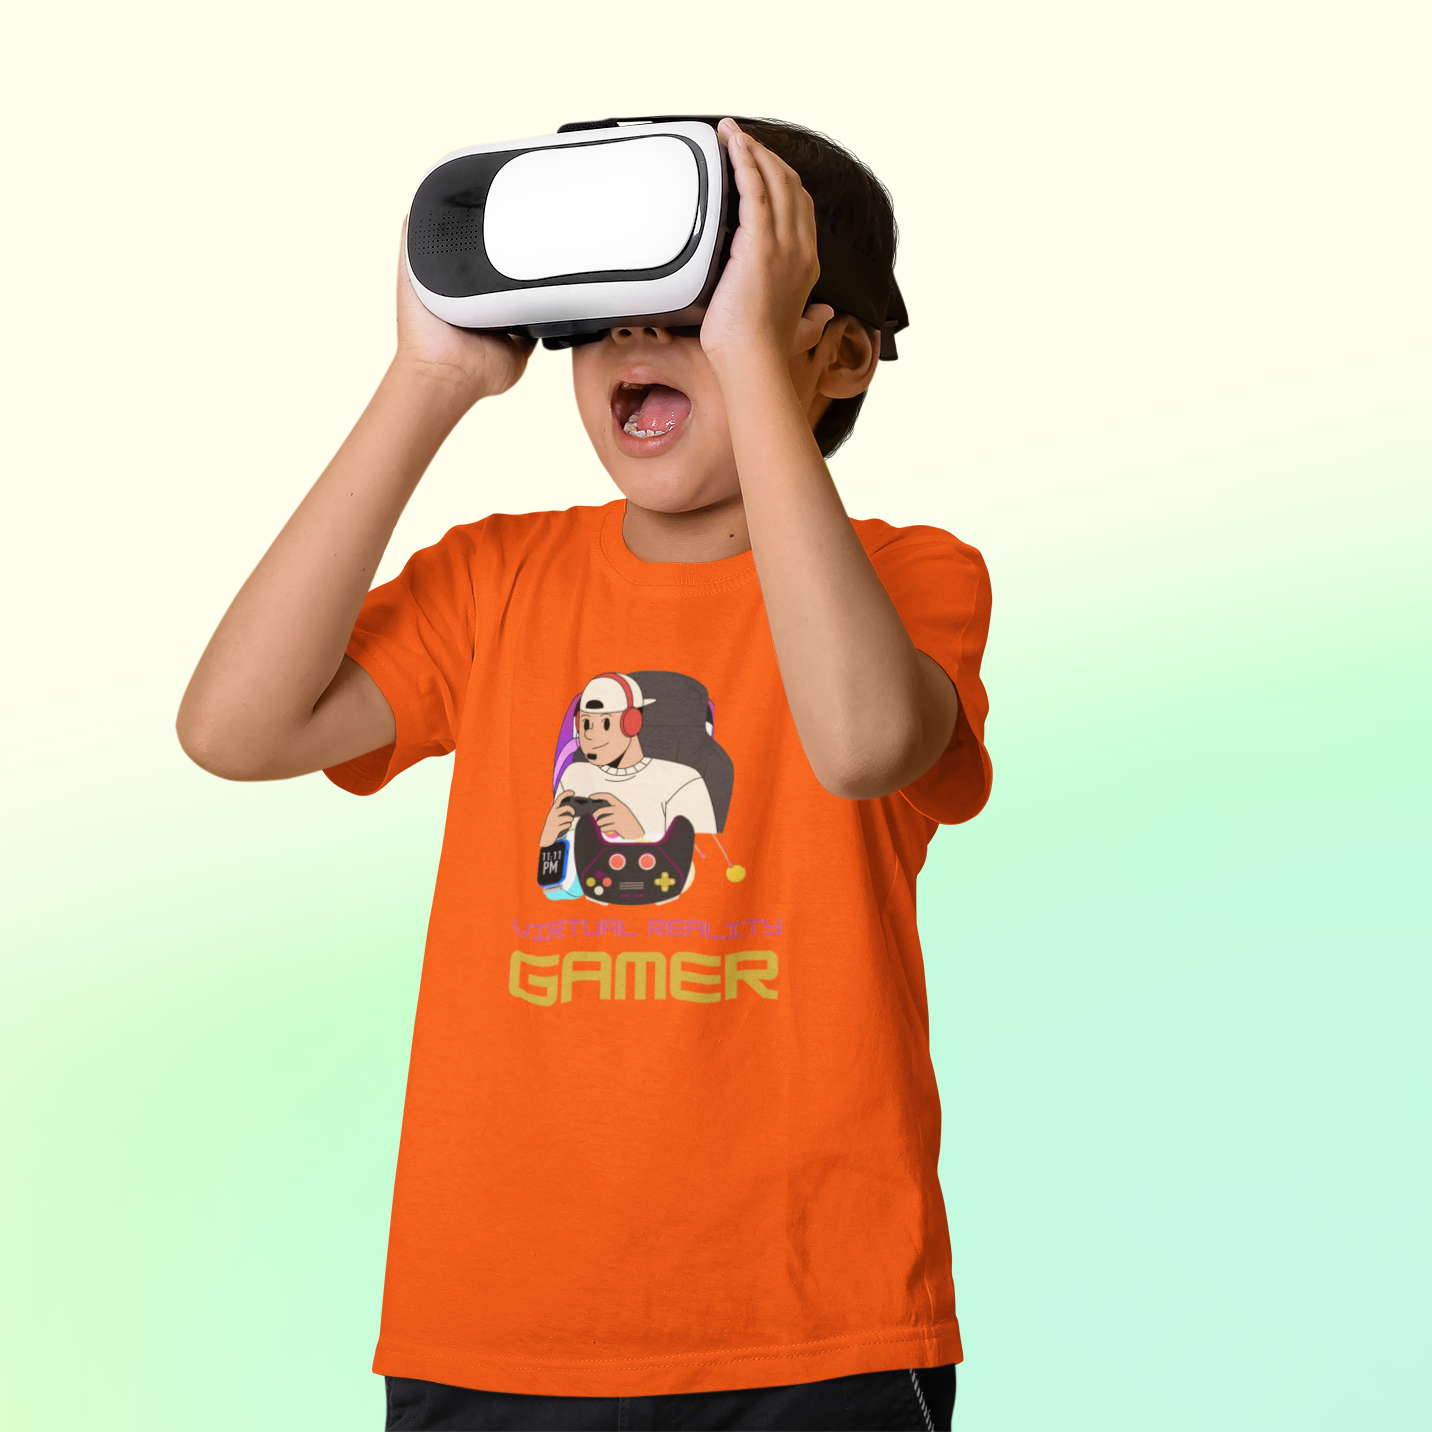 VR Gamer T-shirt for Kids Orange